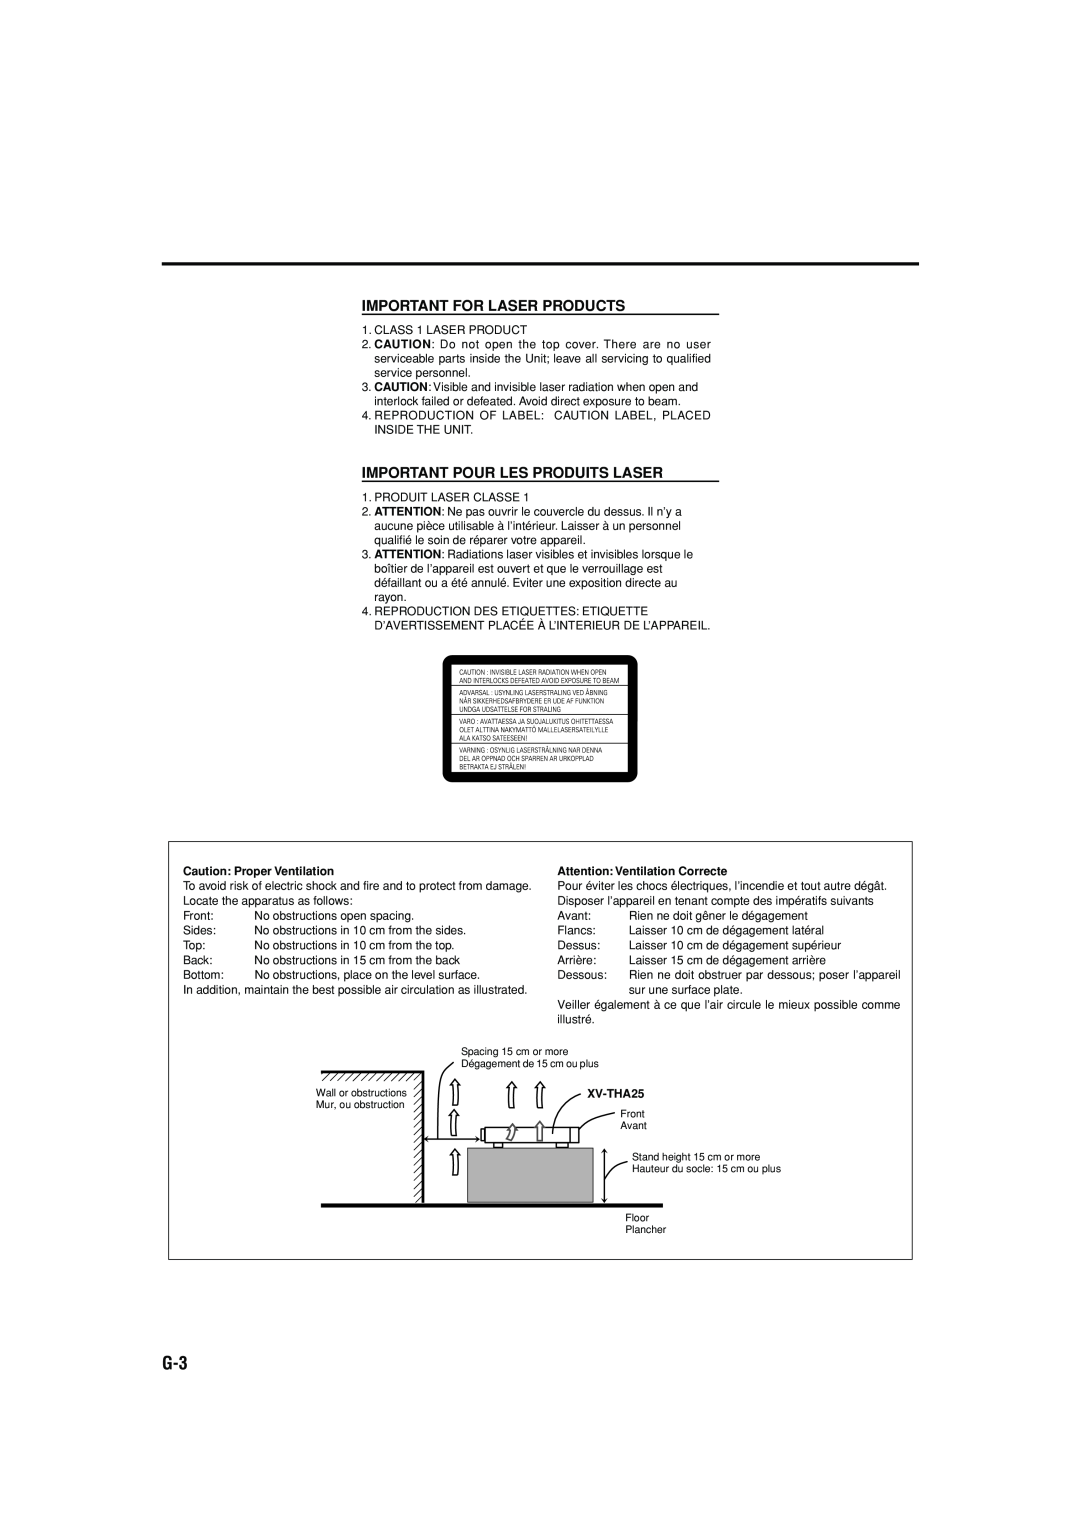 JVC TH-A25 manual Important For Laser Products, Important Pour Les Produits Laser, Caution: Proper Ventilation, XV-THA25 